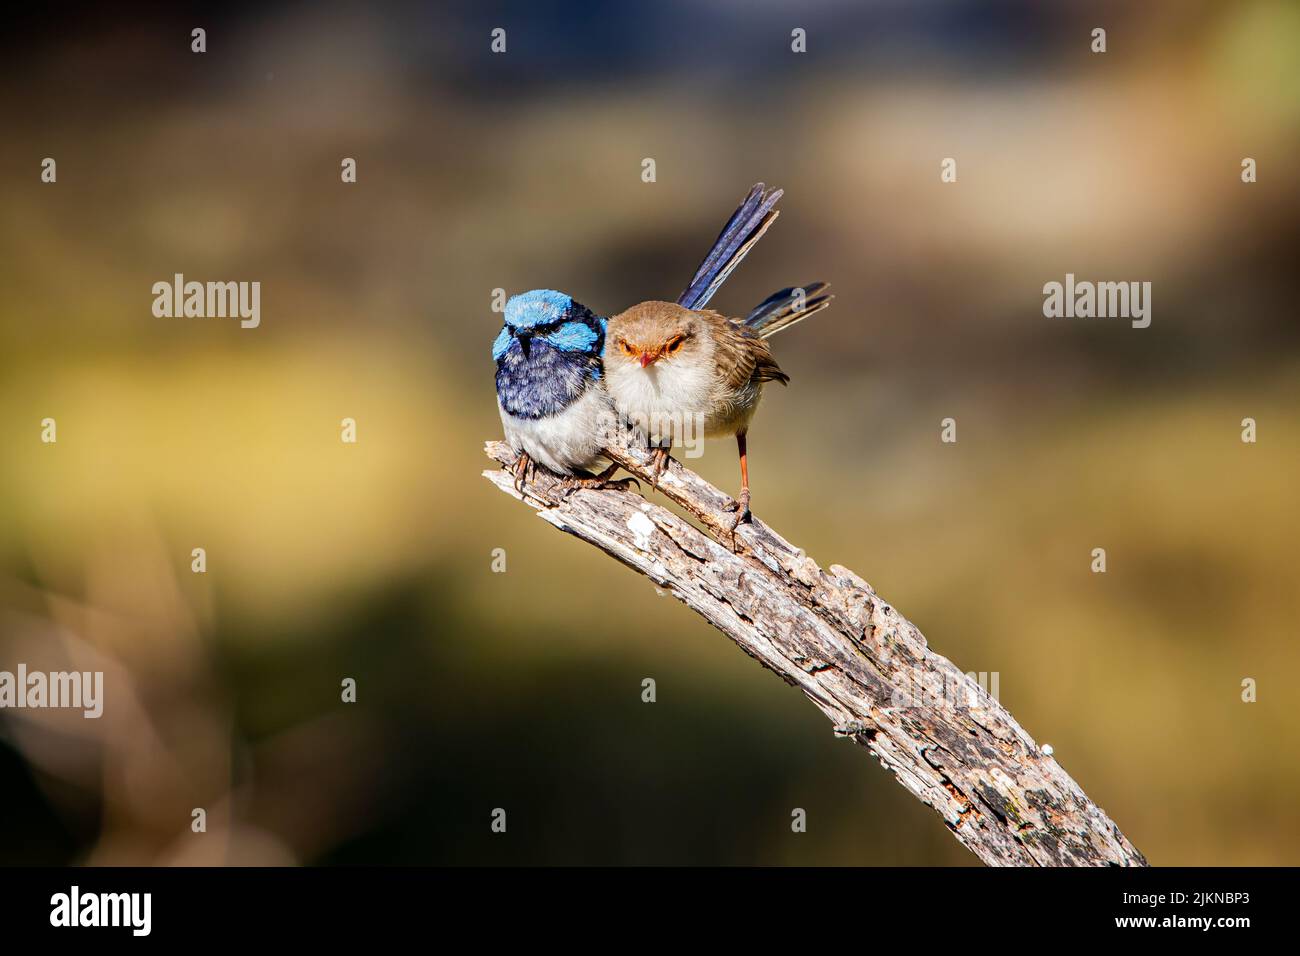 Una coppia carina e superba di wrens fata che si coccola su un legno con sfondo sfocato Foto Stock